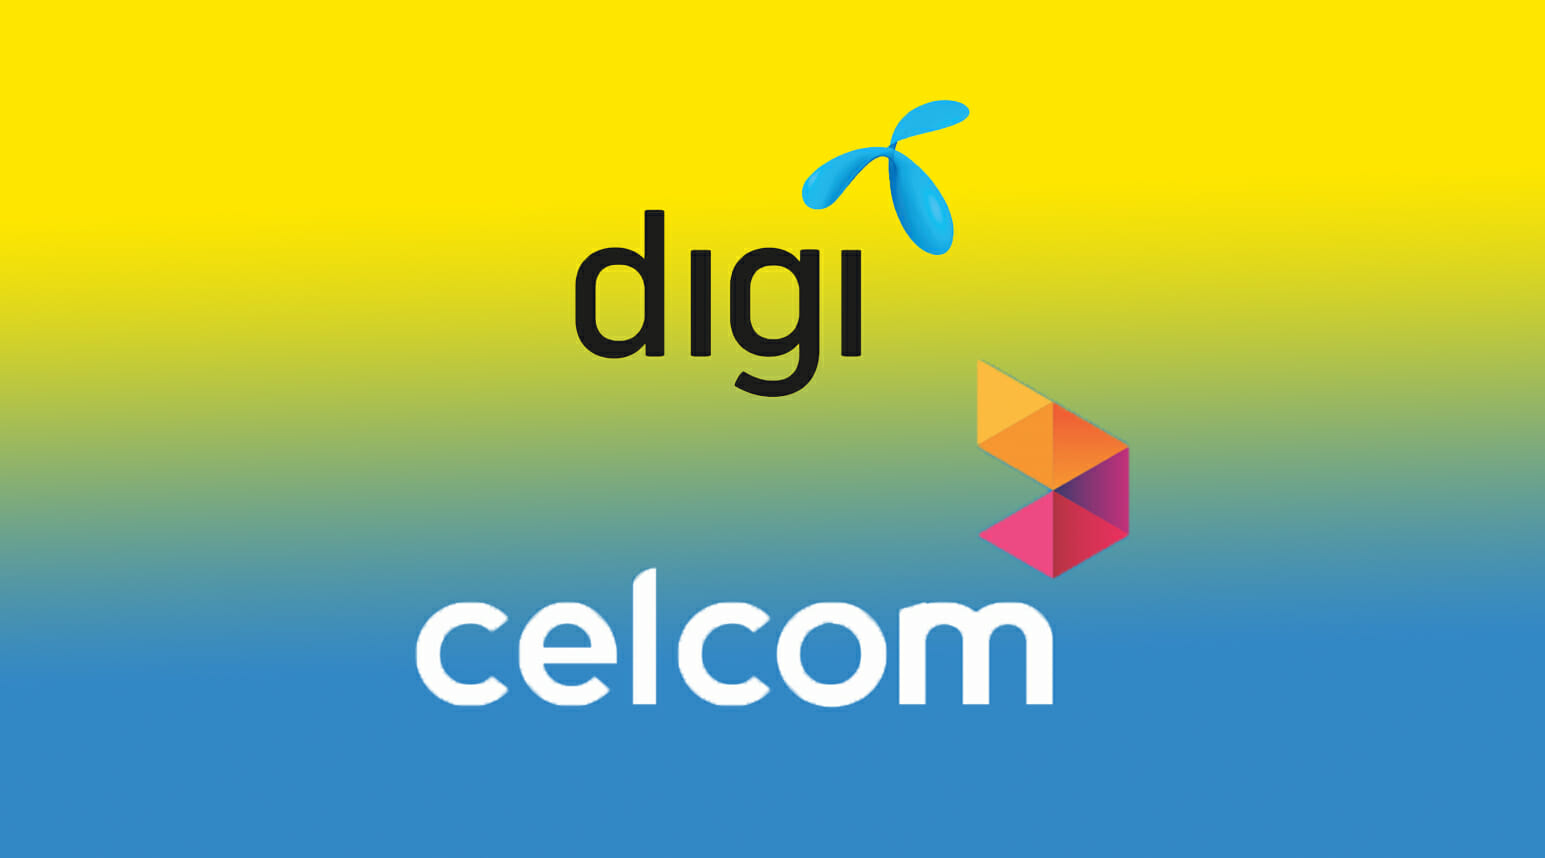 Celcom digi merger